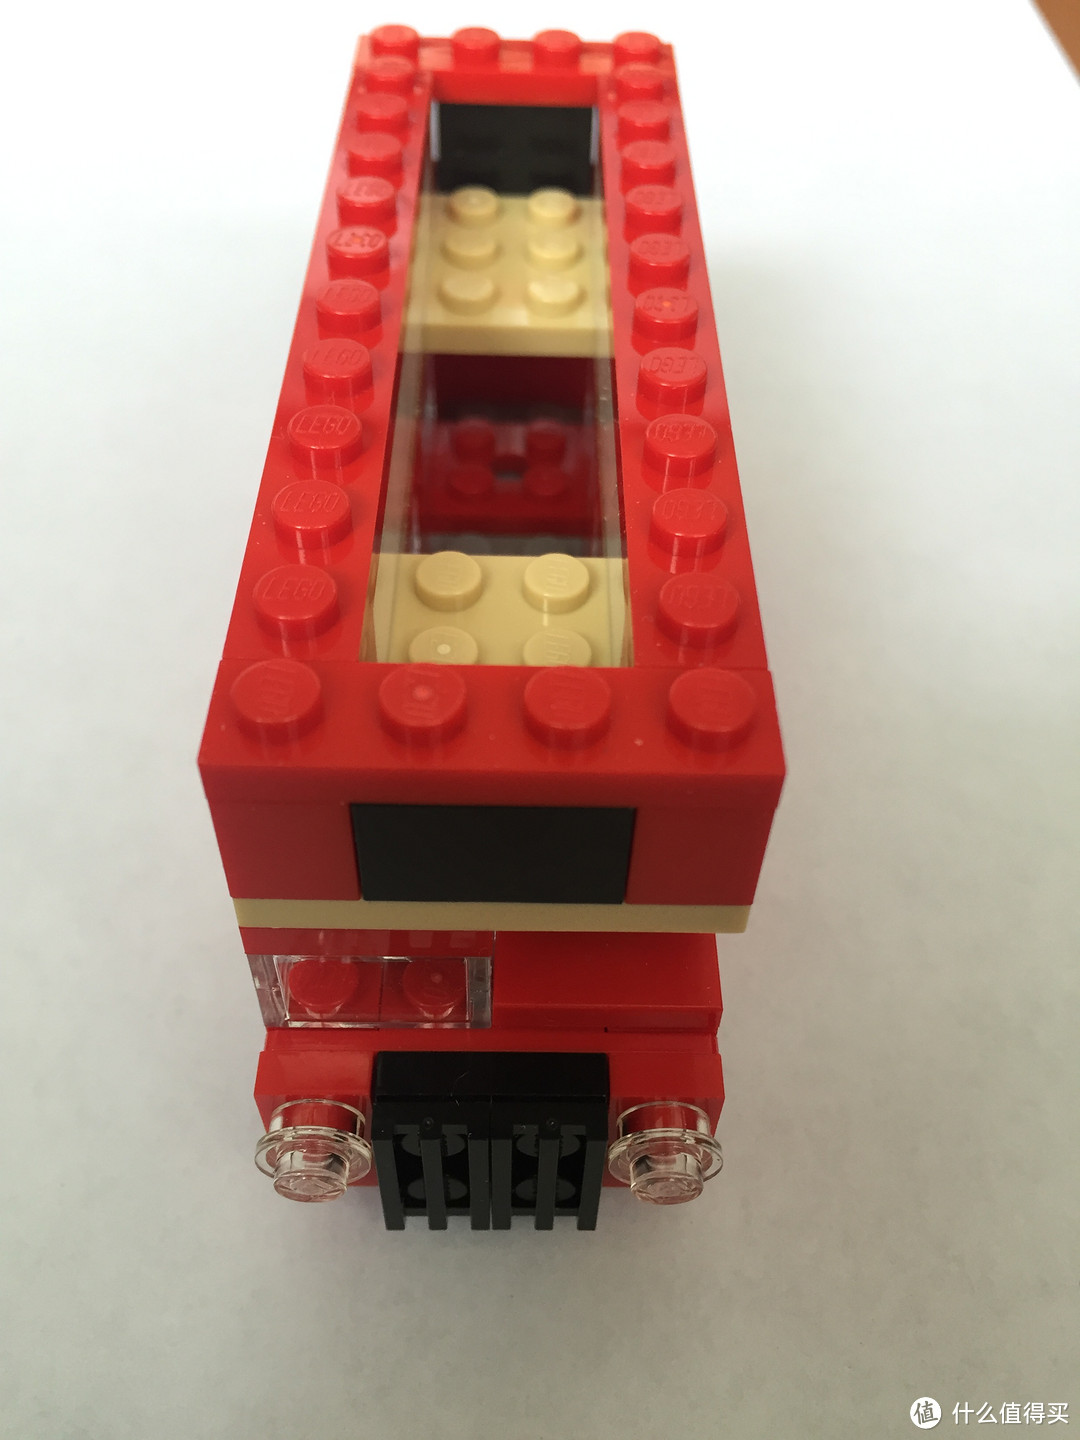 LEGO 乐高 40220 伦敦巴士 晒单